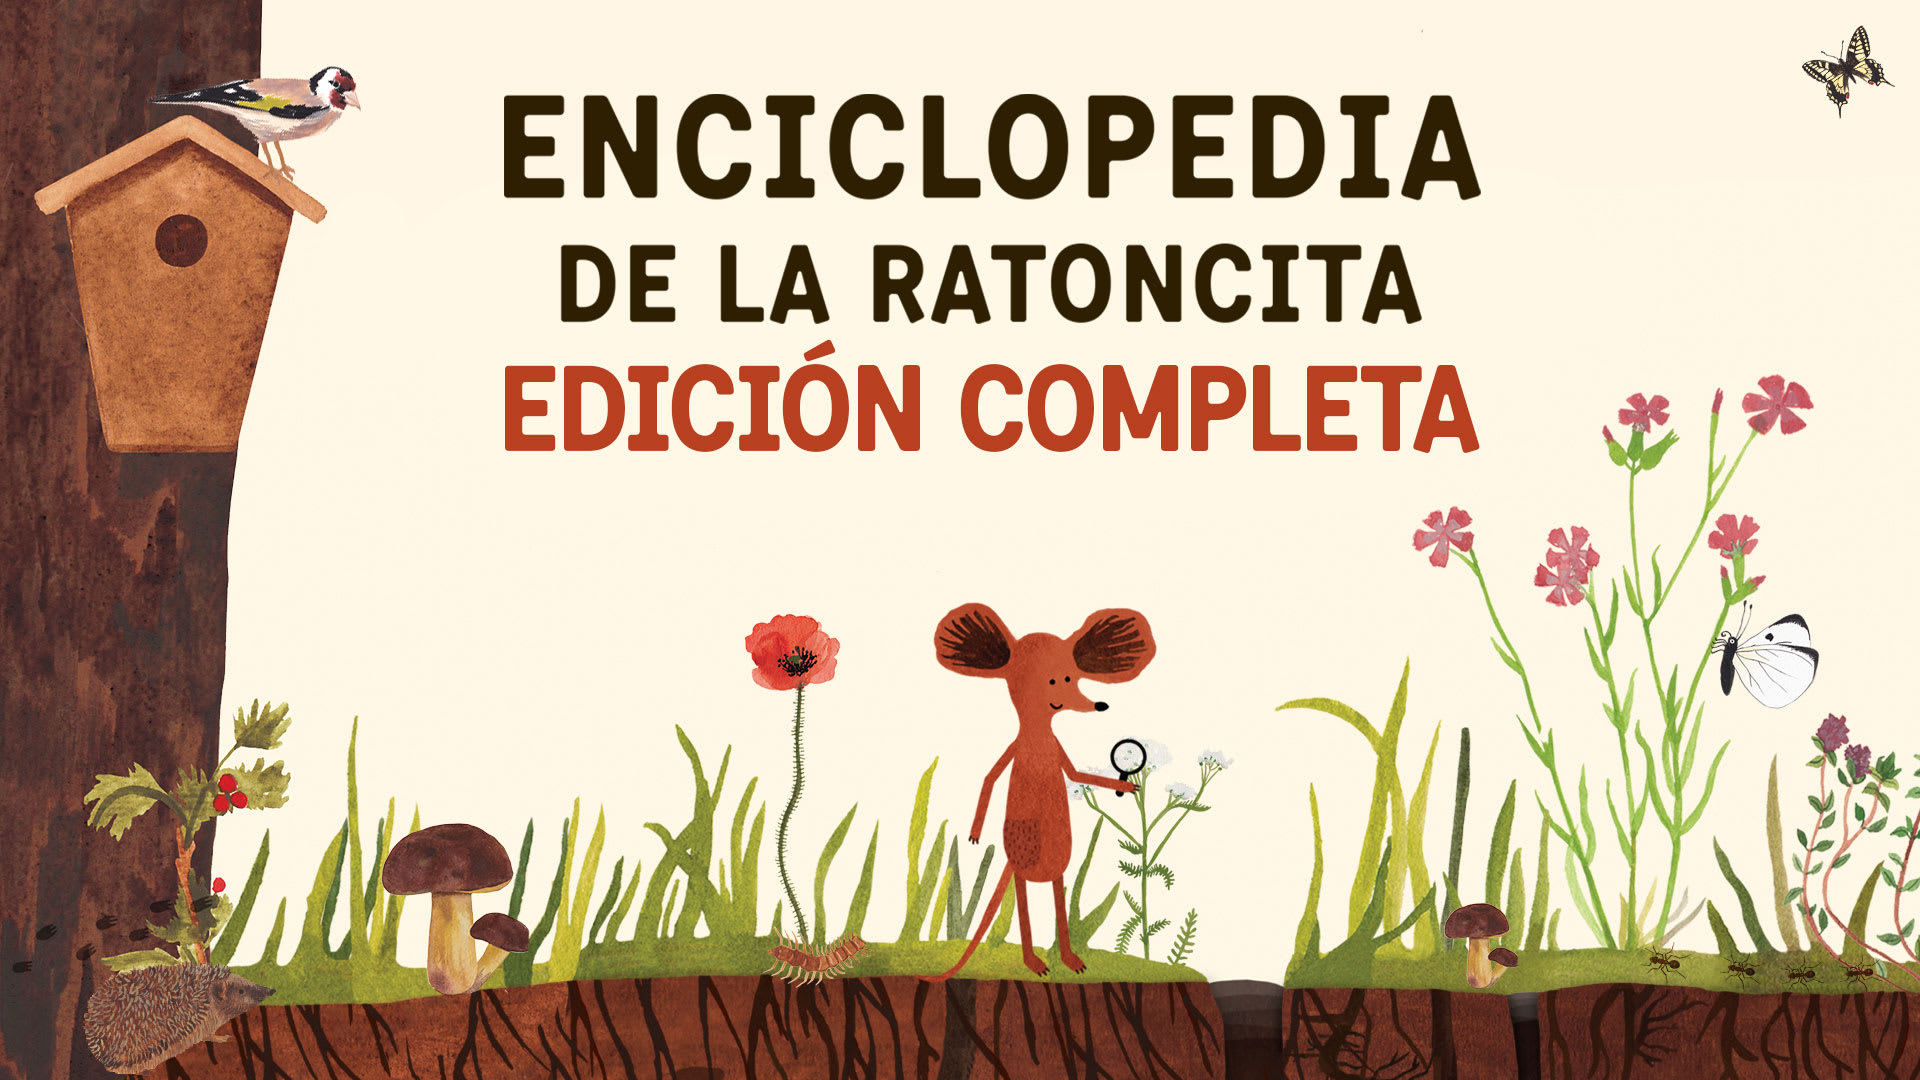 Enciclopedia de la Ratoncita Edición completa